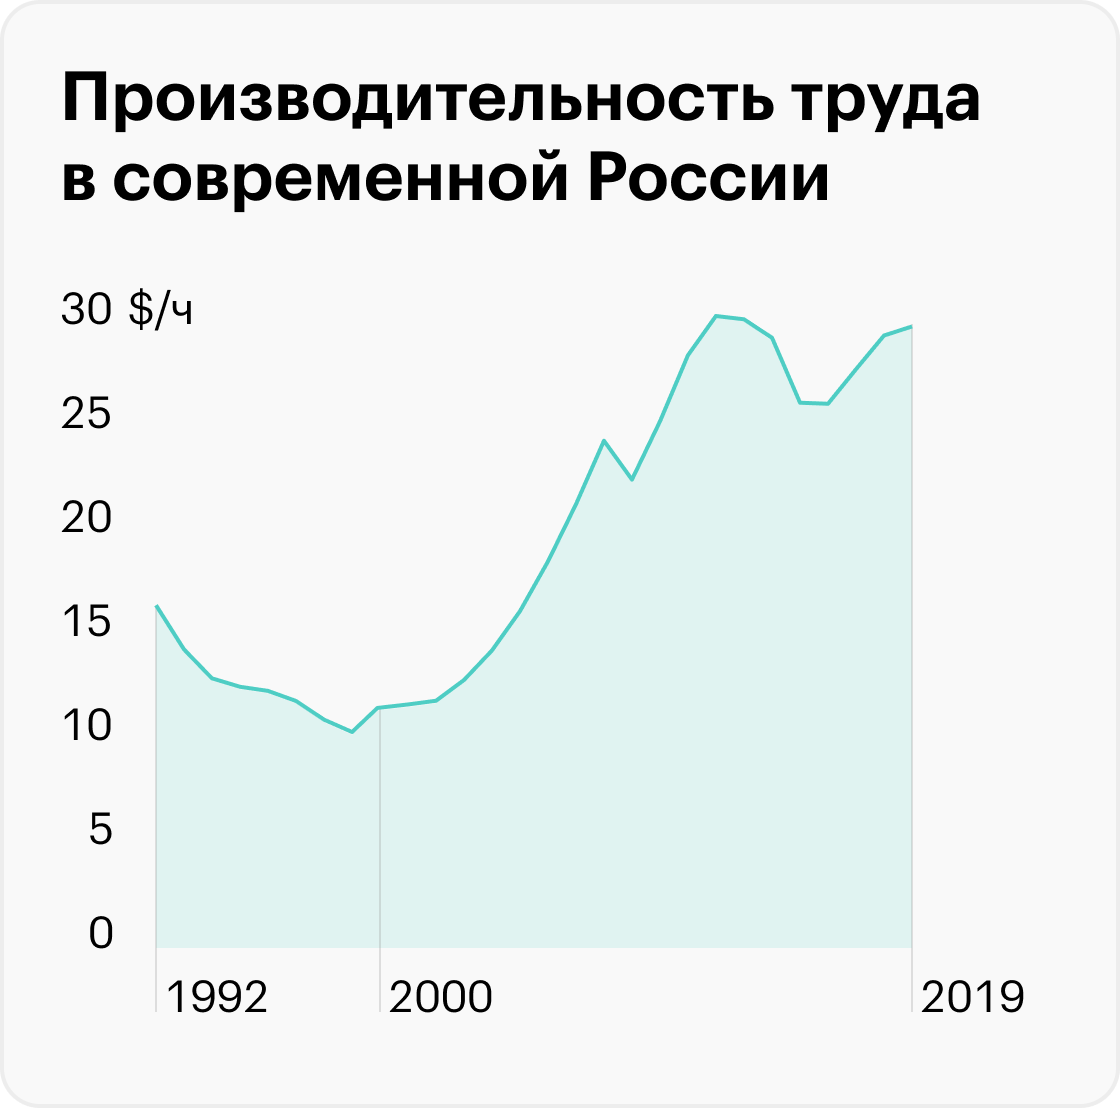 Максимальная производительность труда в России была в 2012&nbsp;году — 30 $/ч. Источник: Our World in Data